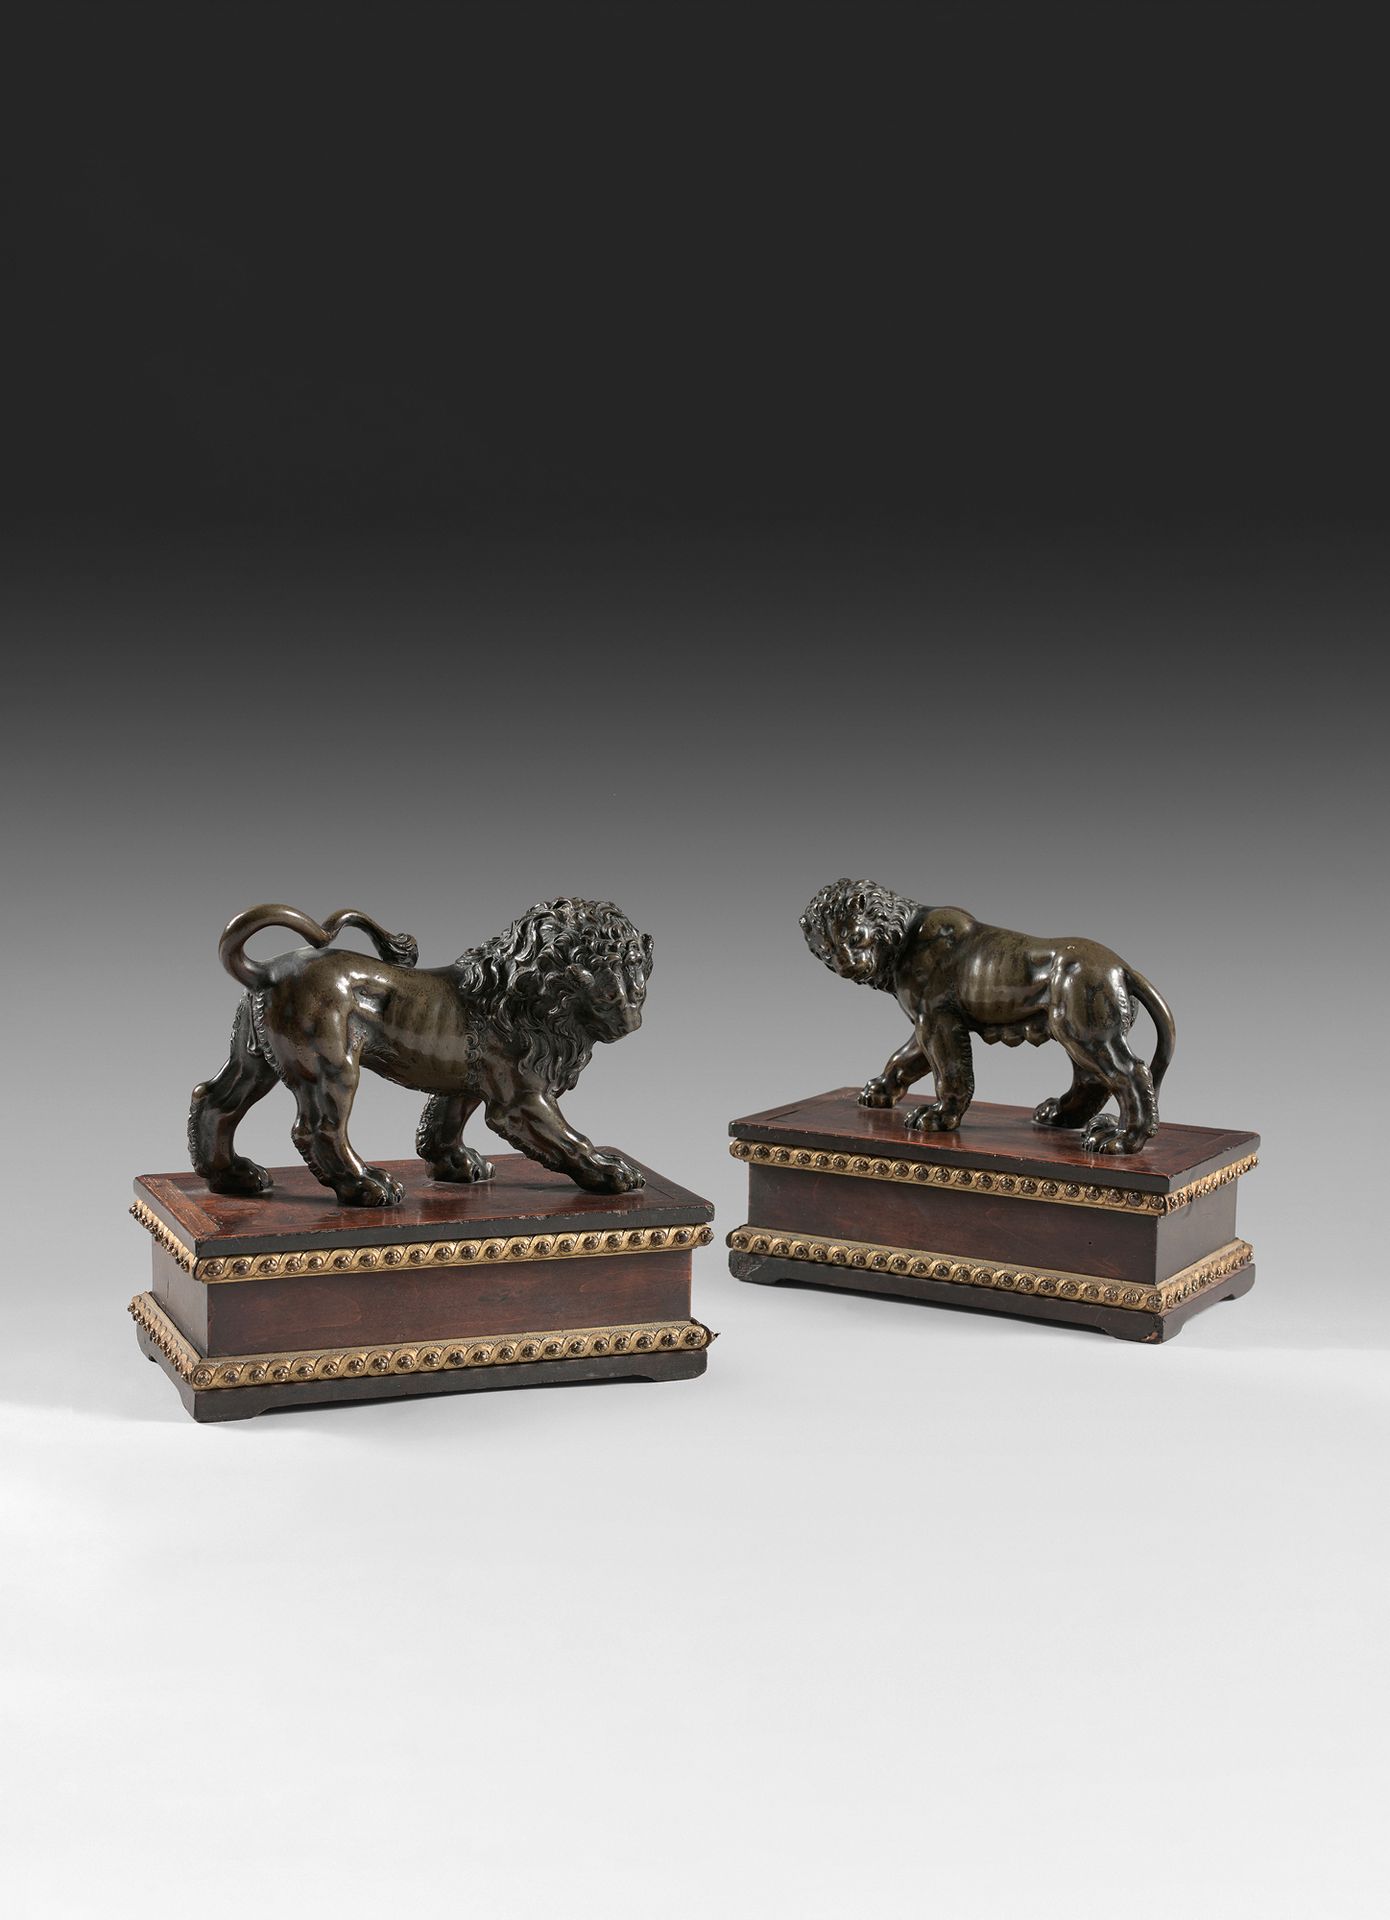 Null 一对铜制的狮子和母狮，有凹槽和铜化处理。
可能是18世纪的佛兰德人作品。 
它们呈现在发黑的梨木长方形底座上，上面装饰着同一时期的铜质模子，上面有交错&hellip;